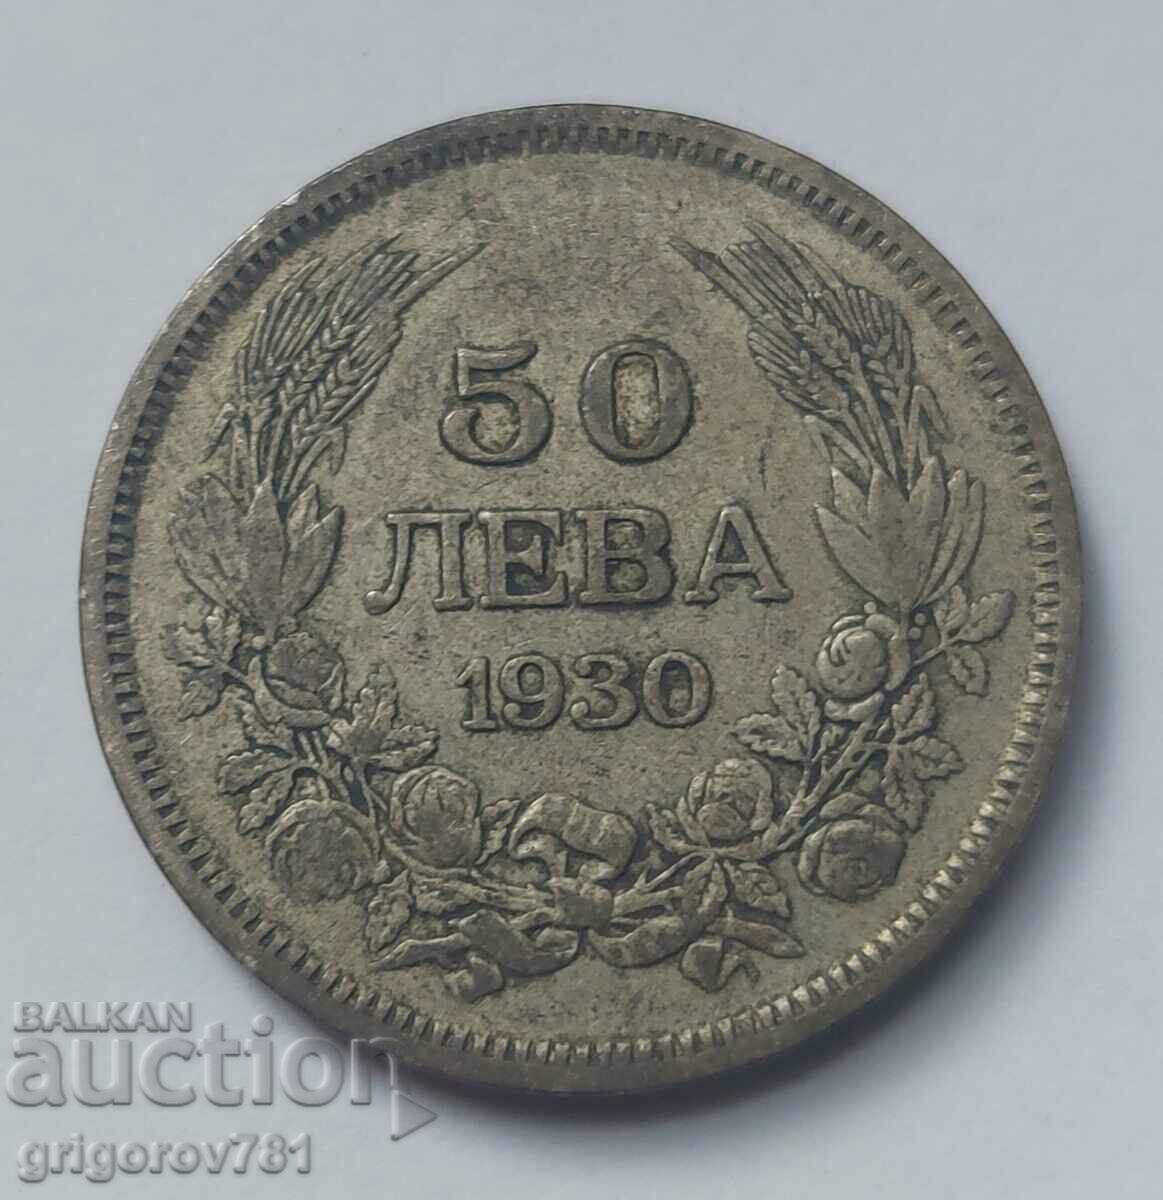 Ασήμι 50 λέβα Βουλγαρία 1930 - ασημένιο νόμισμα #35